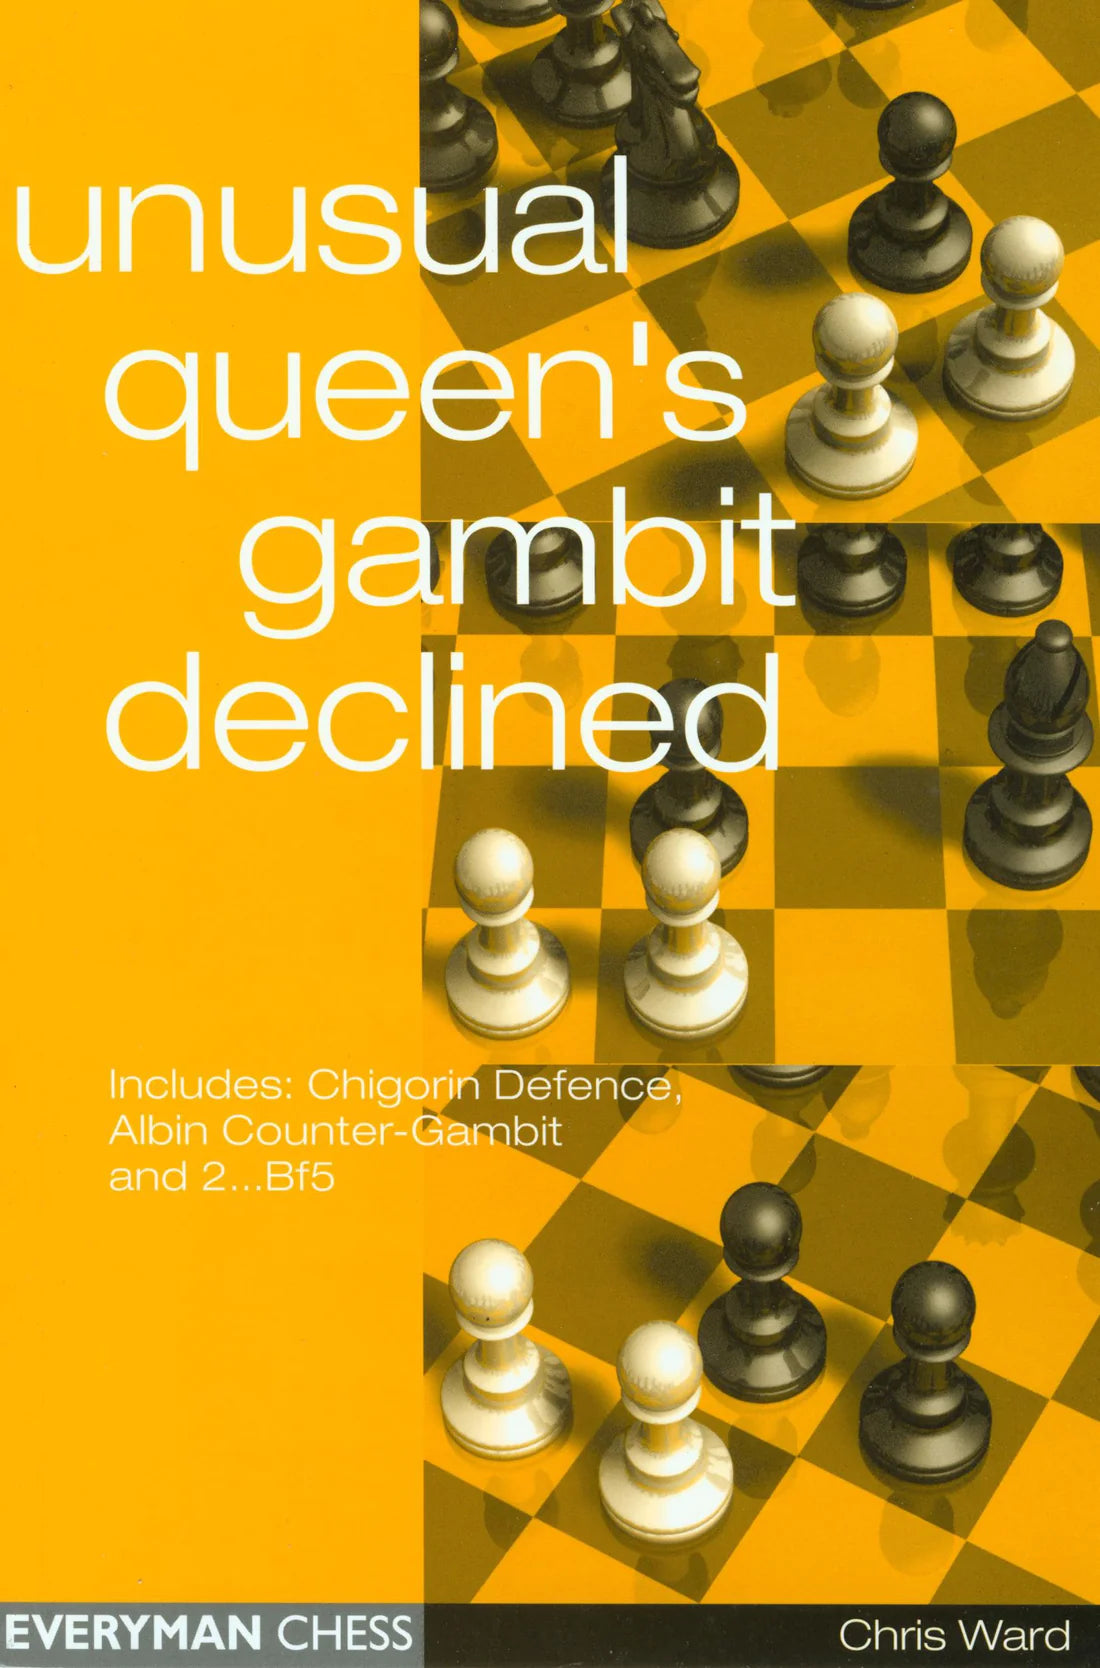 Ward: Unusual Queen's Gambit Declined